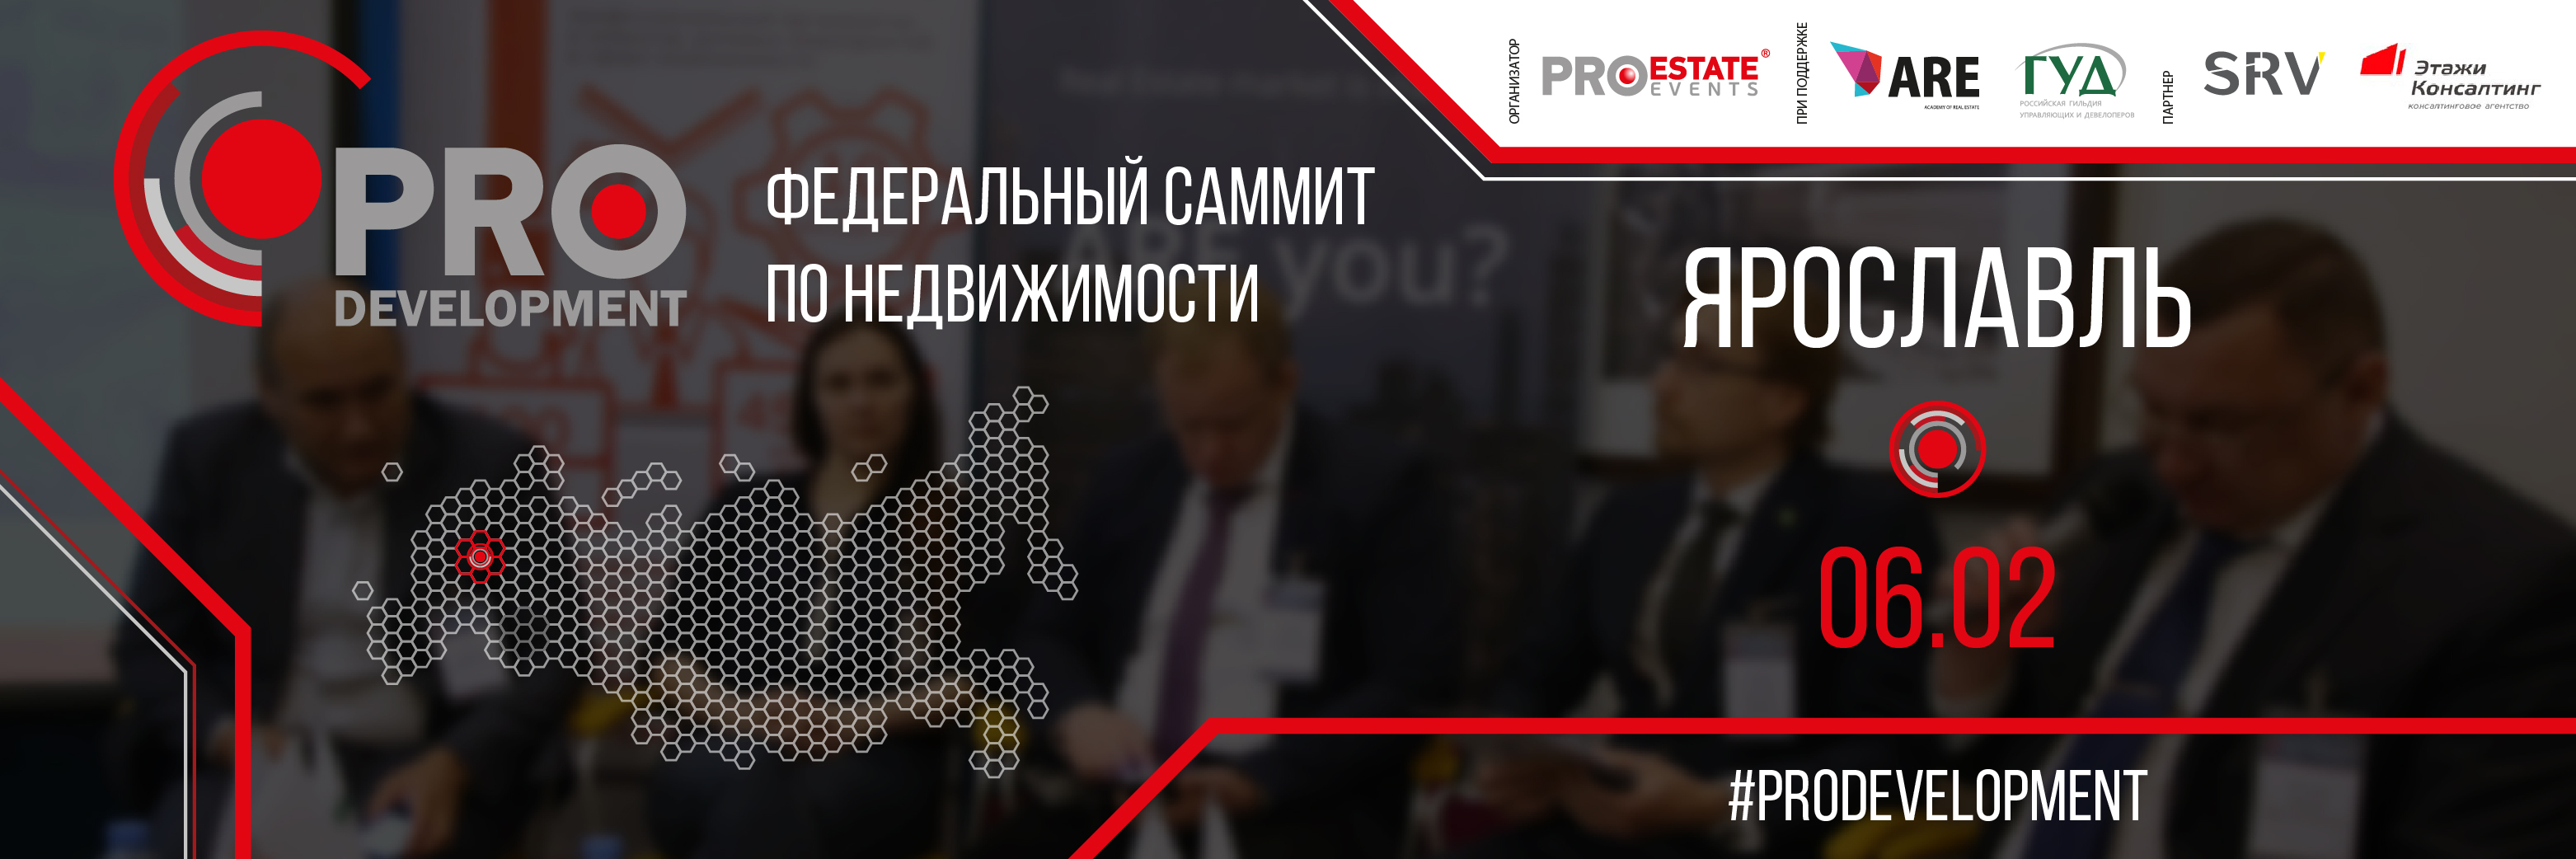 Федеральный Саммит PRO Development в Ярославле: всё о недвижимости в регионе!